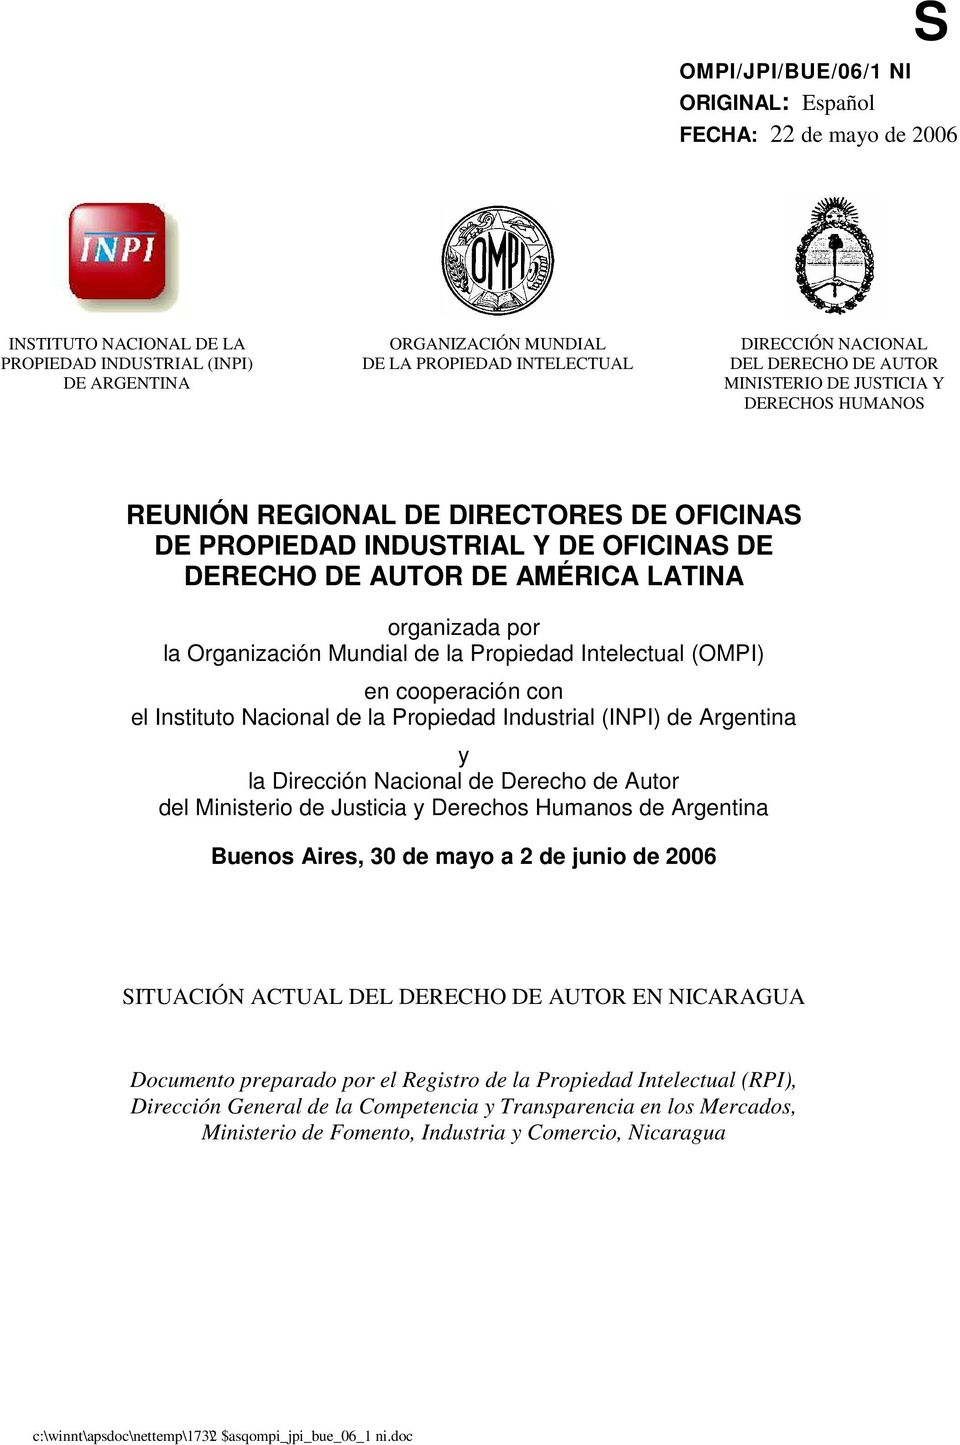 organizada por la Organización Mundial de la Propiedad Intelectual (OMPI) en cooperación con el Instituto Nacional de la Propiedad Industrial (INPI) de Argentina y la Dirección Nacional de Derecho de